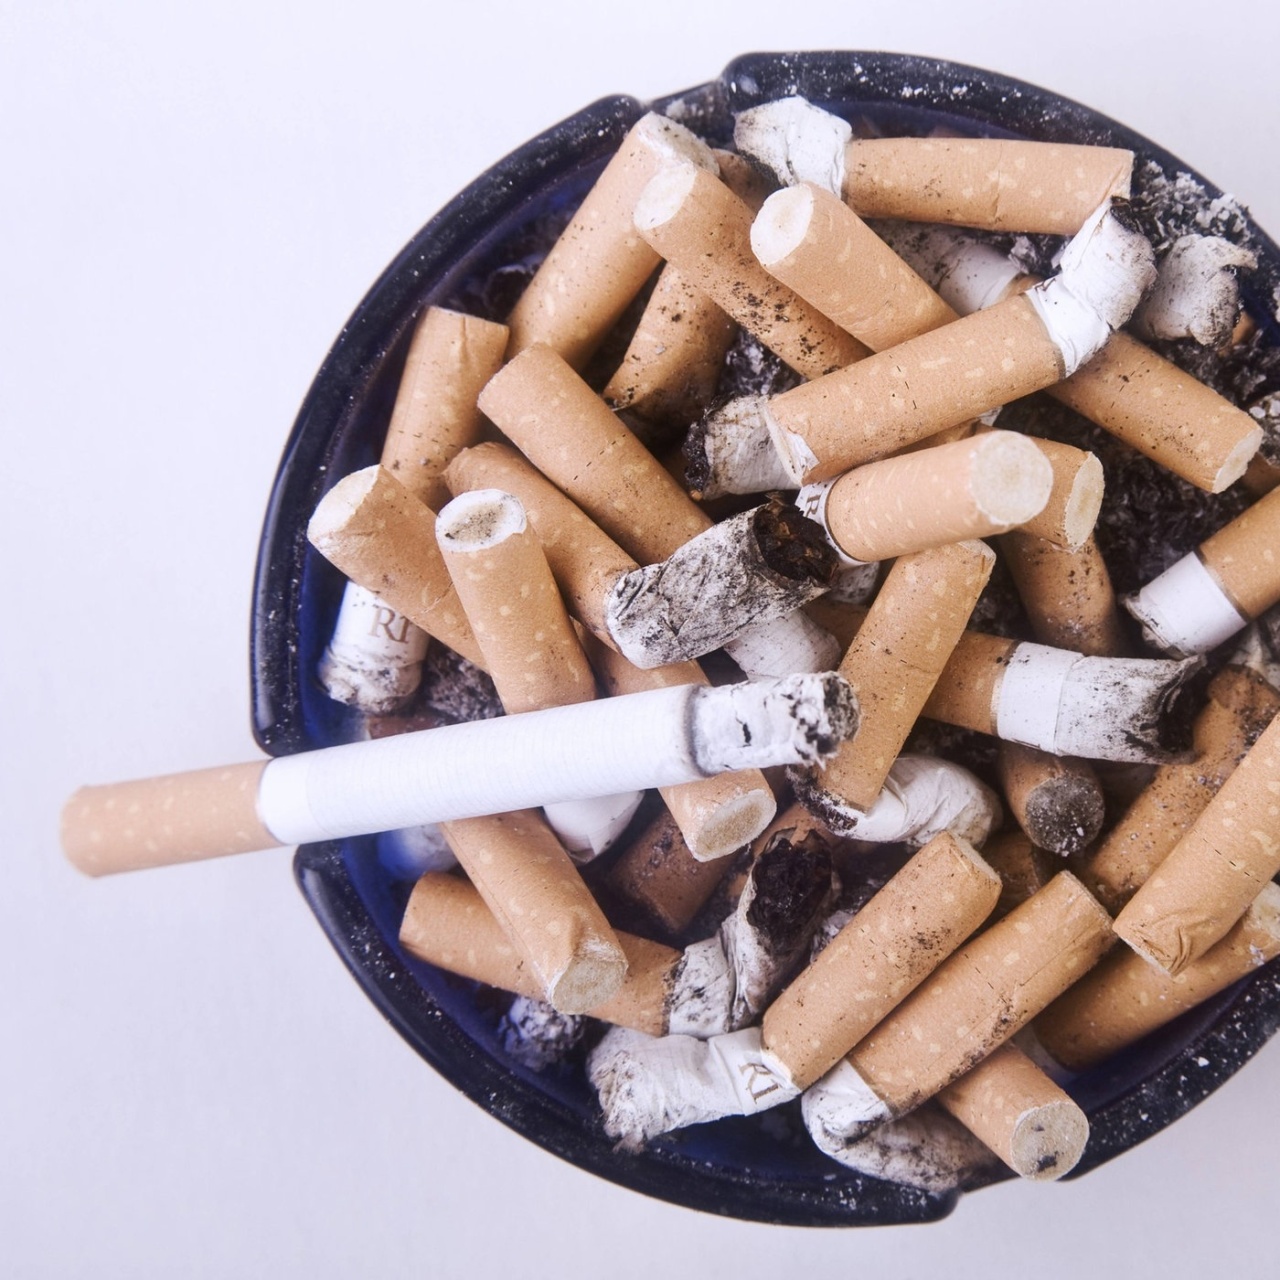 MausZoom · Rauchfrei in drei Jahren - Neuseeland bekommt neue Tabakgesetze  · Podcast in der ARD Audiothek